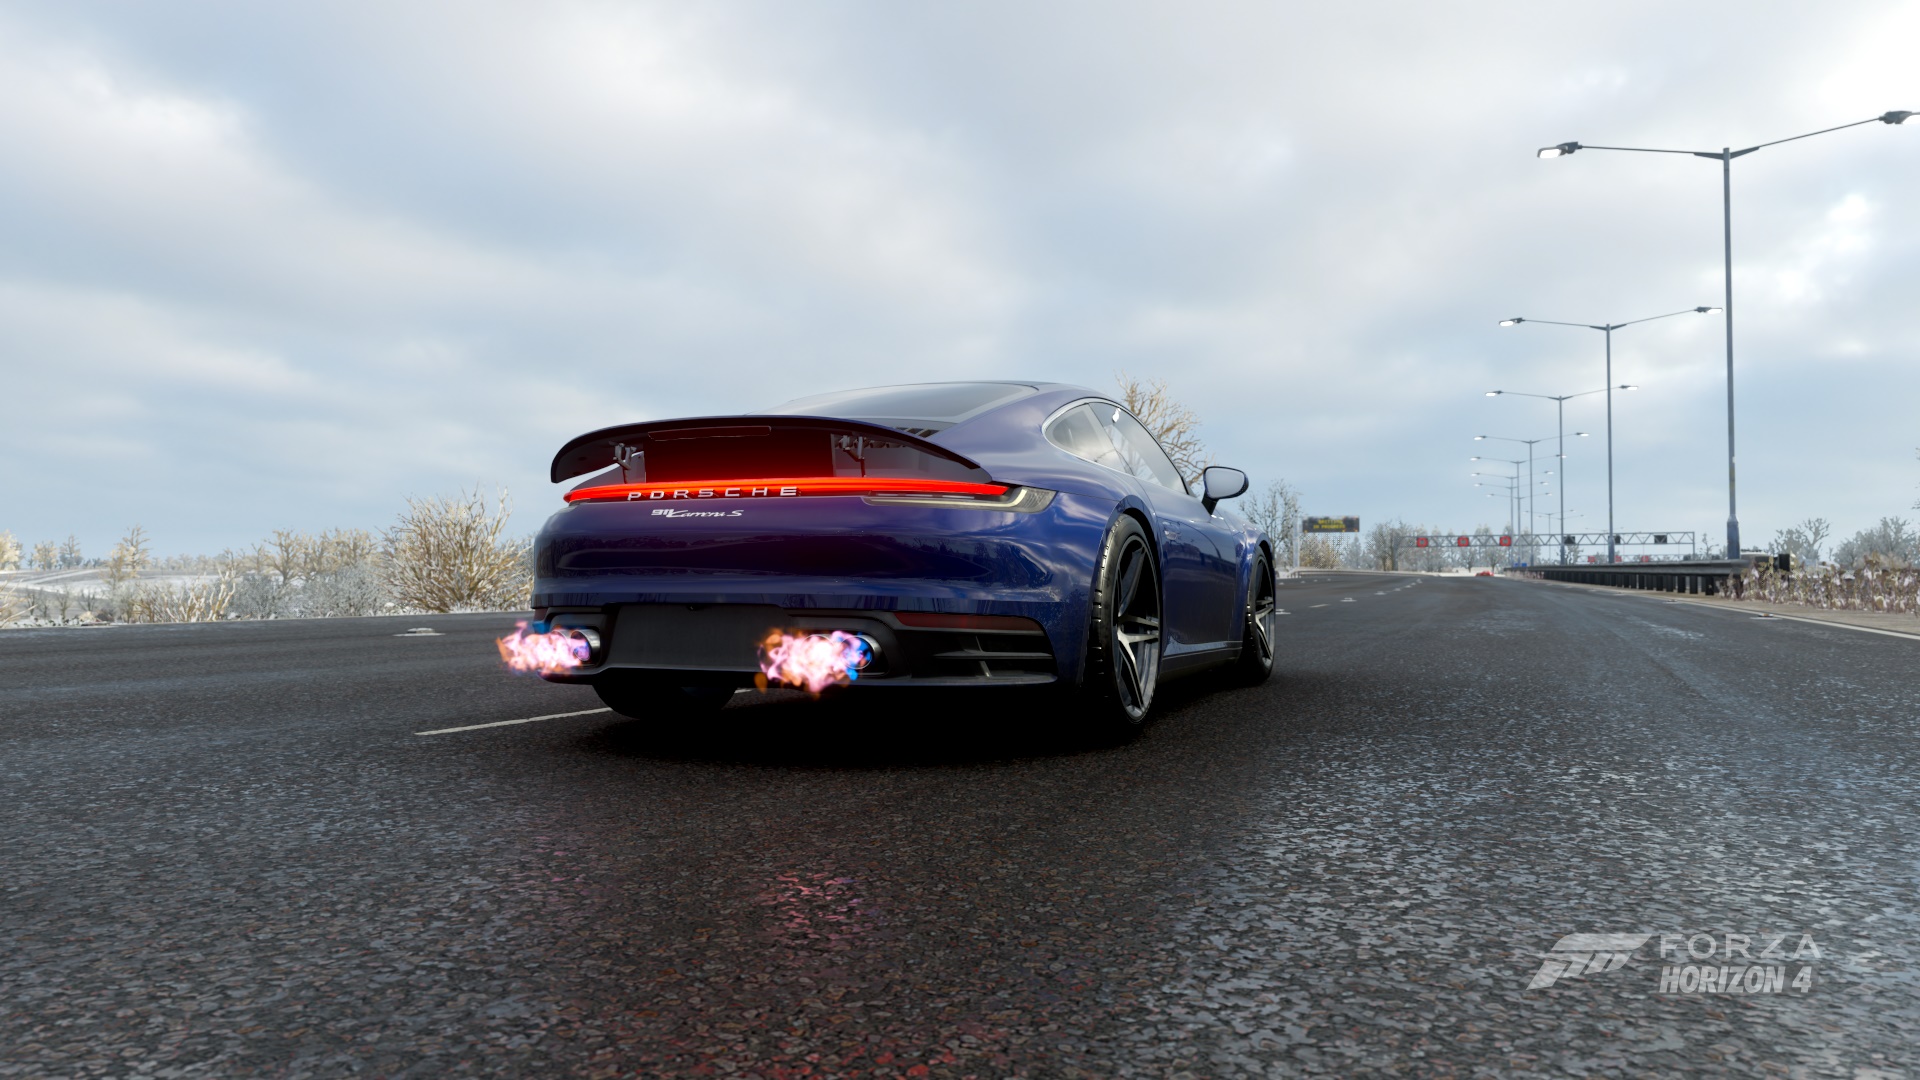 General 1920x1080 Forza Horizon 4 video games screen shot car Porsche Porsche 911 Porsche 992 backfire blue cars vehicle nitro